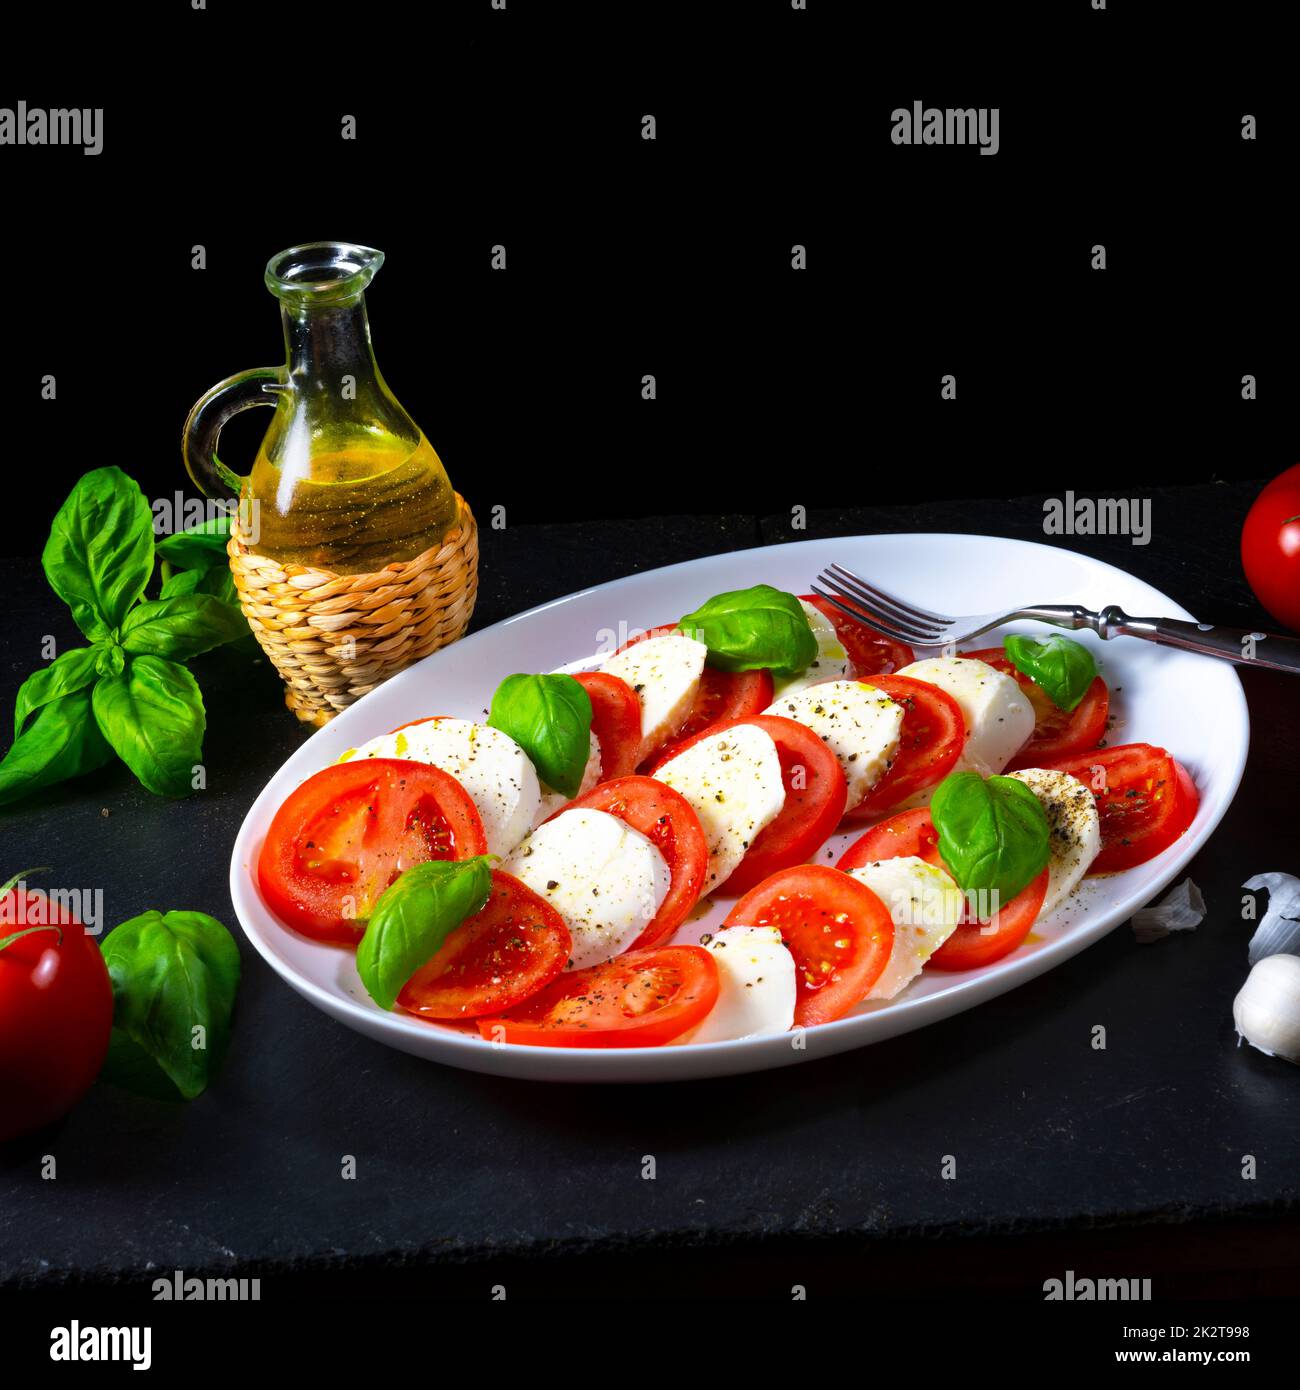 Tomato with mozzarella and basil Stock Photo